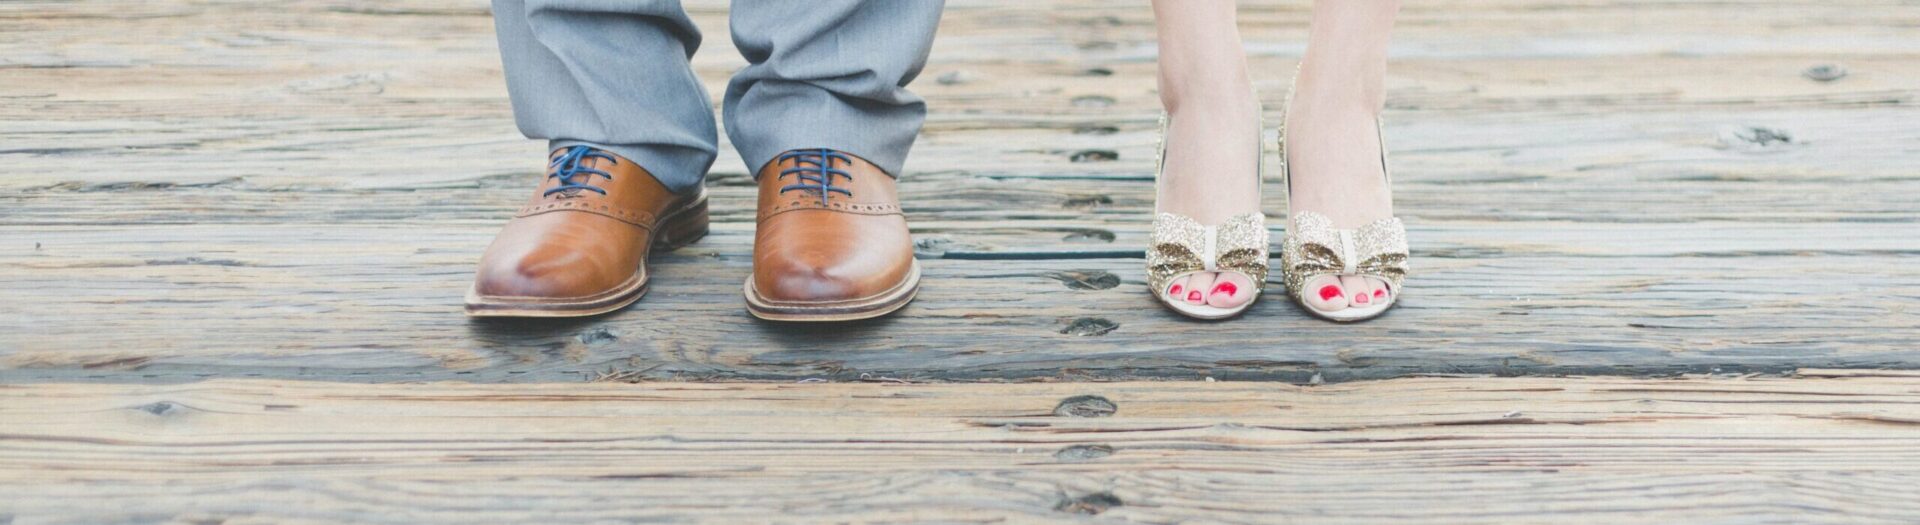 Ein Satz männlicher Füße und ein Satz weiblicher Füße - Hochzeitsfoto